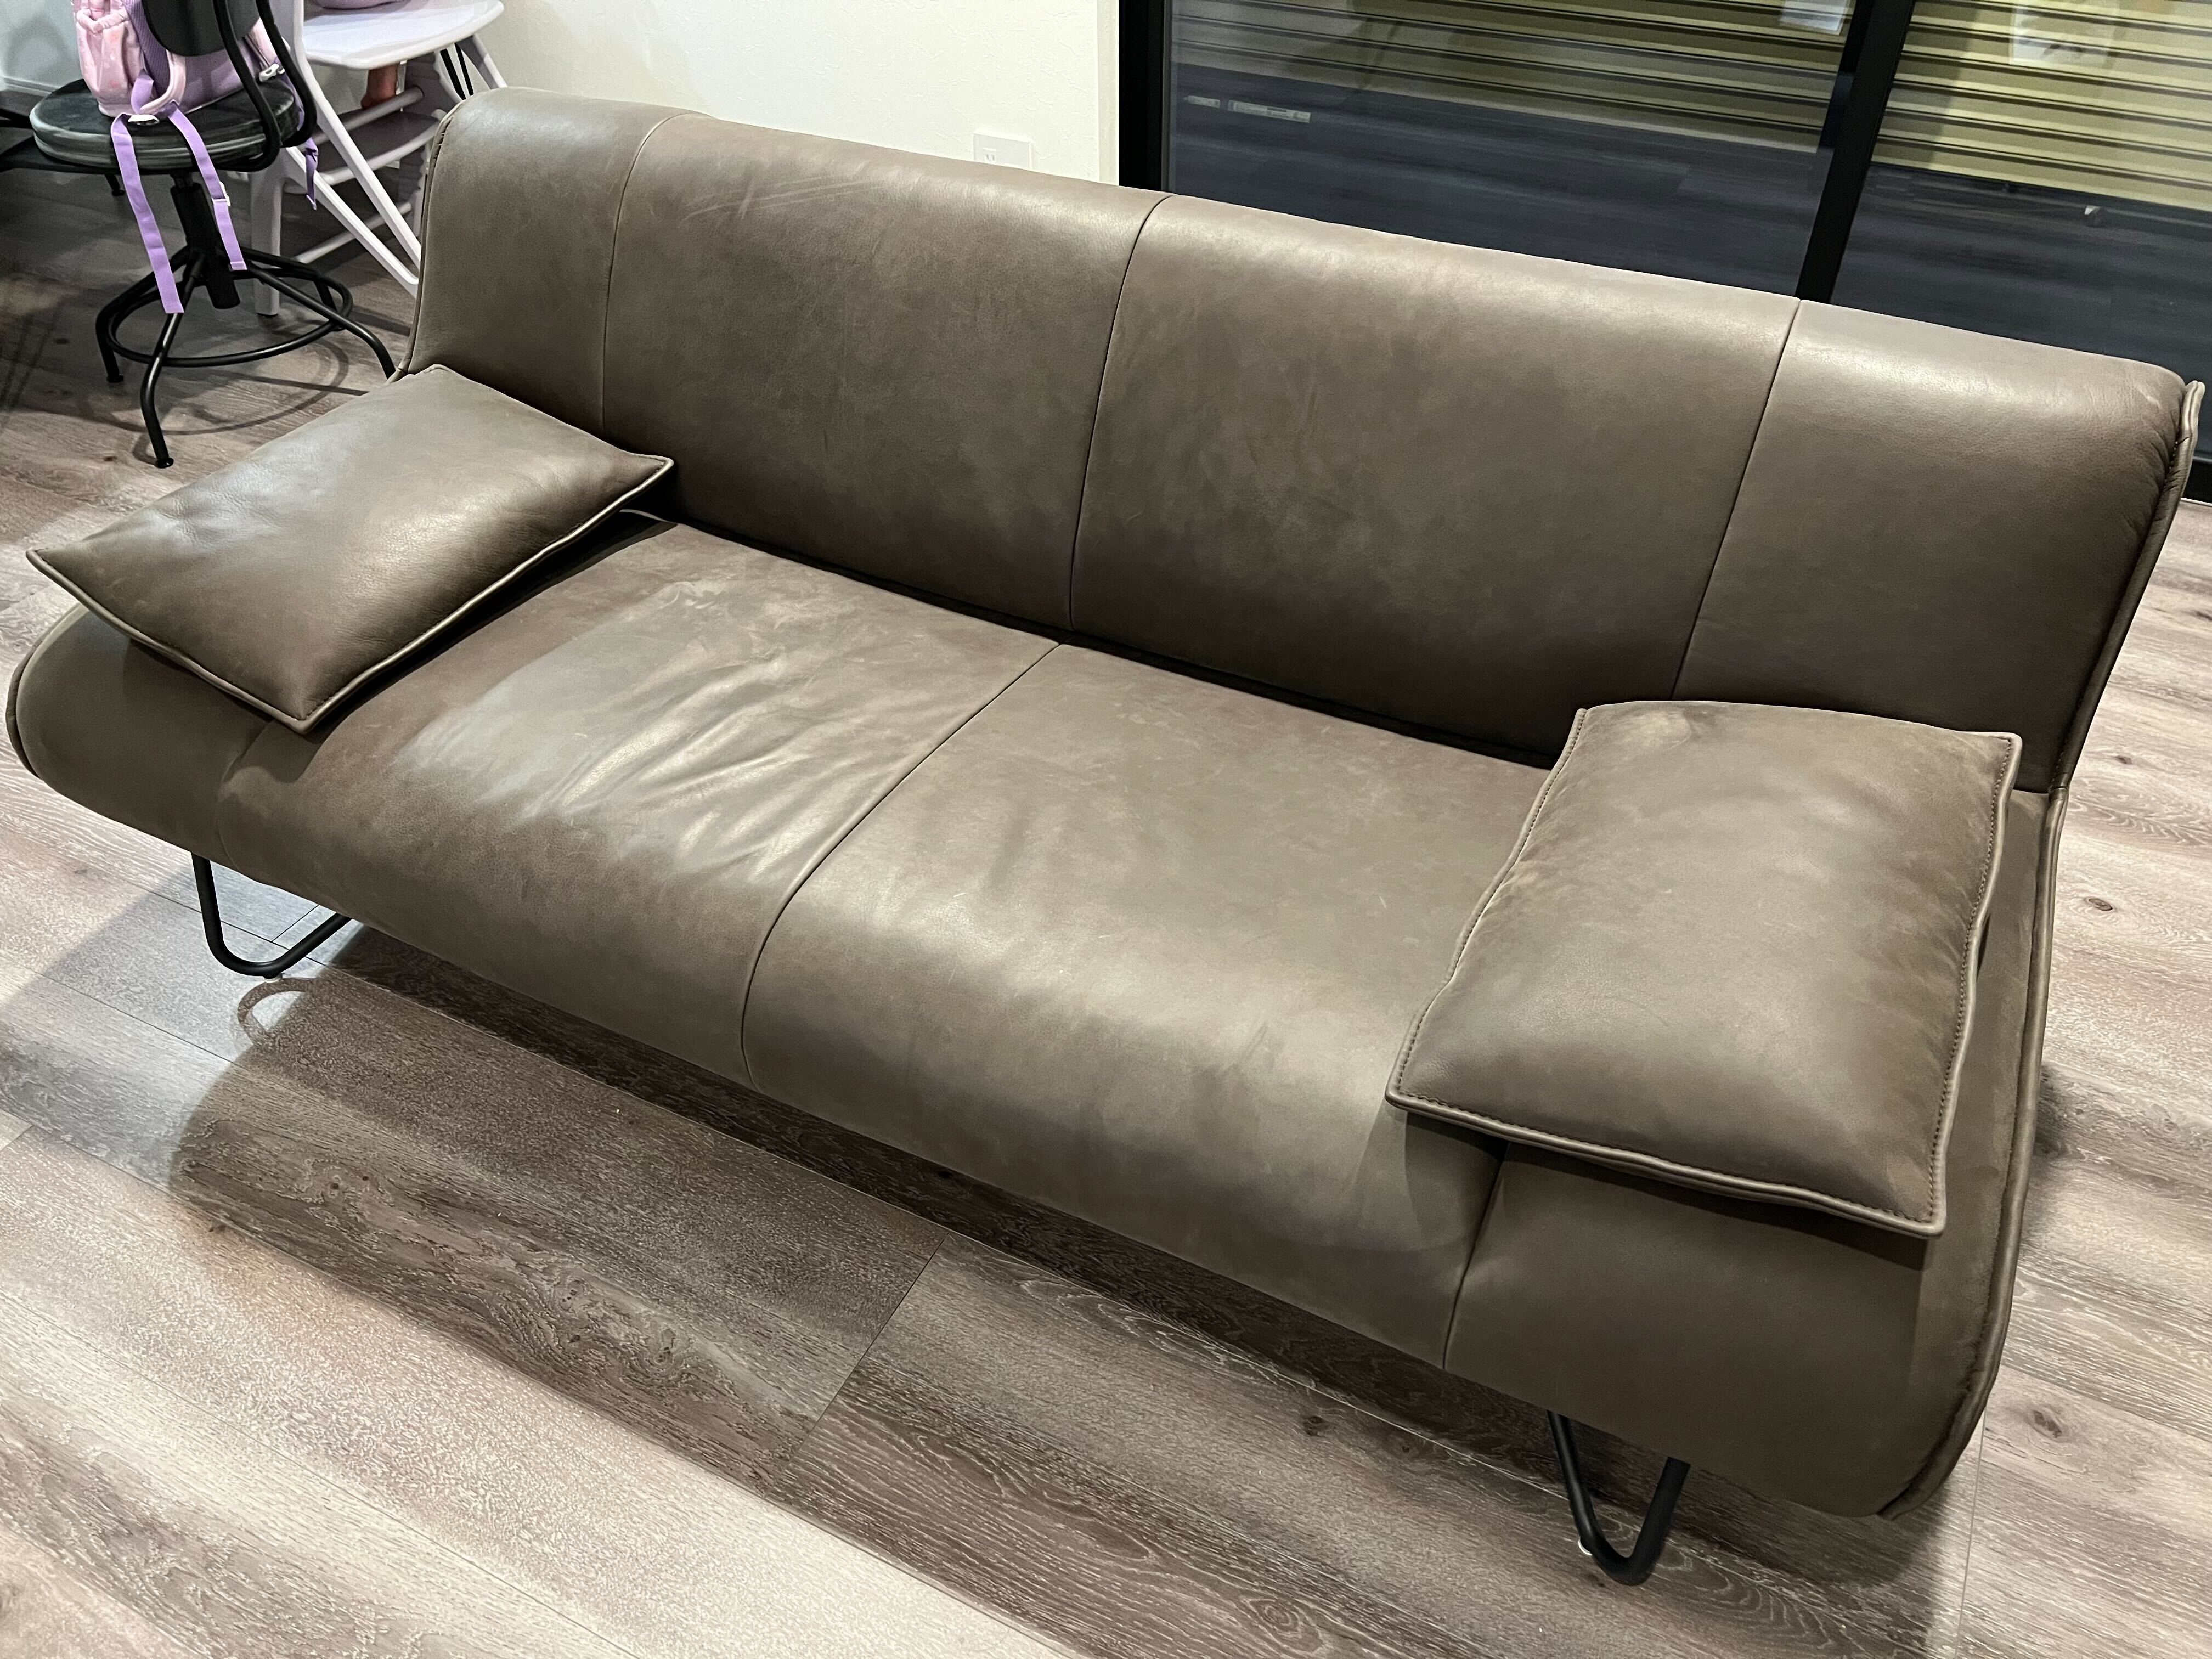 グレーっぽい革のソファ